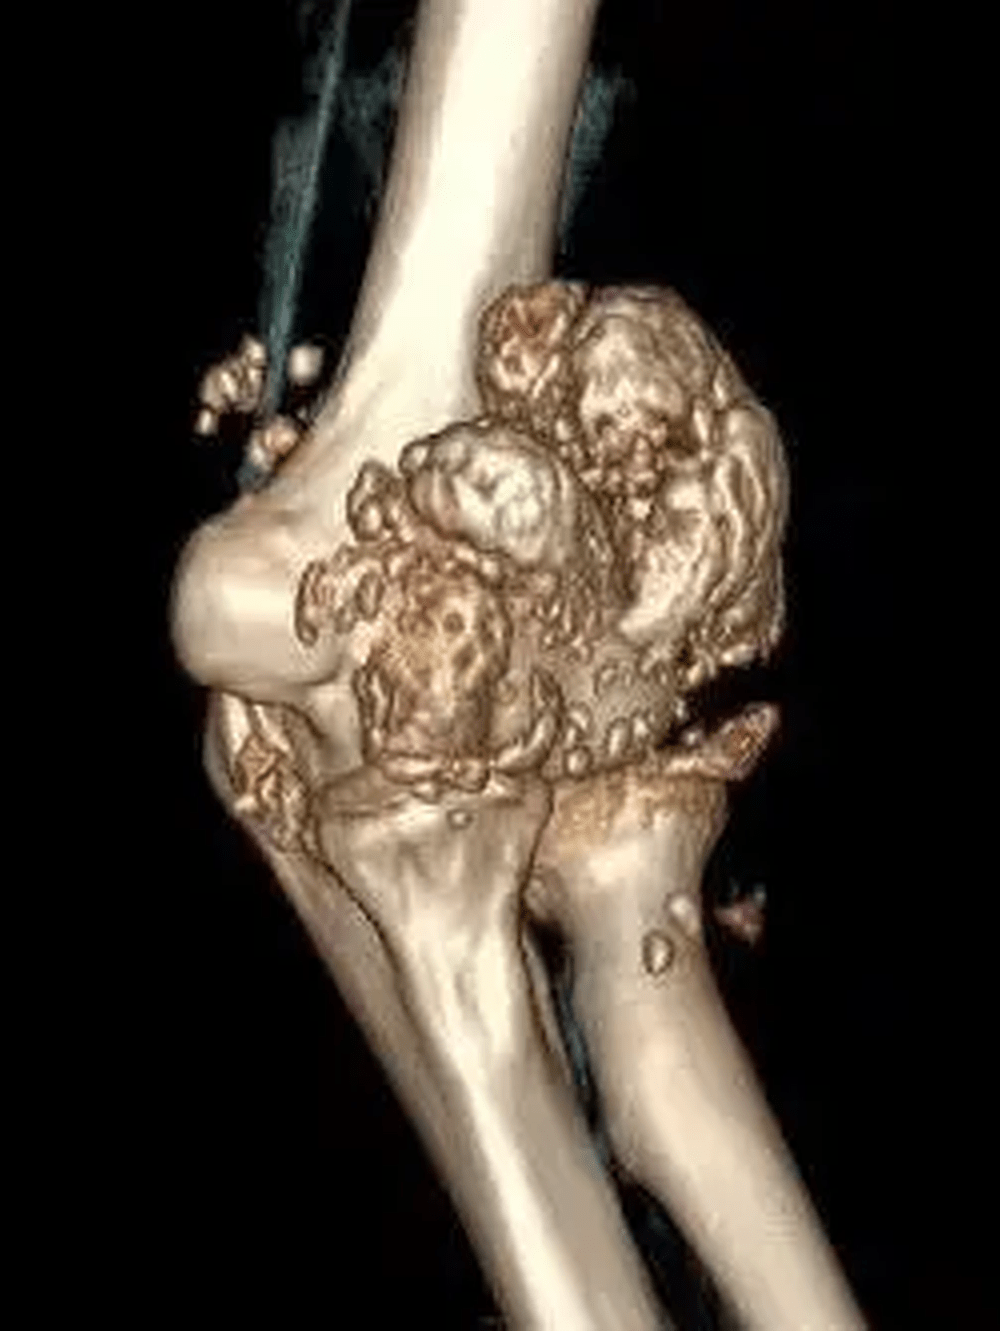 病人的手肘关节内居然长出千馀颗「珍珠」状颗粒。